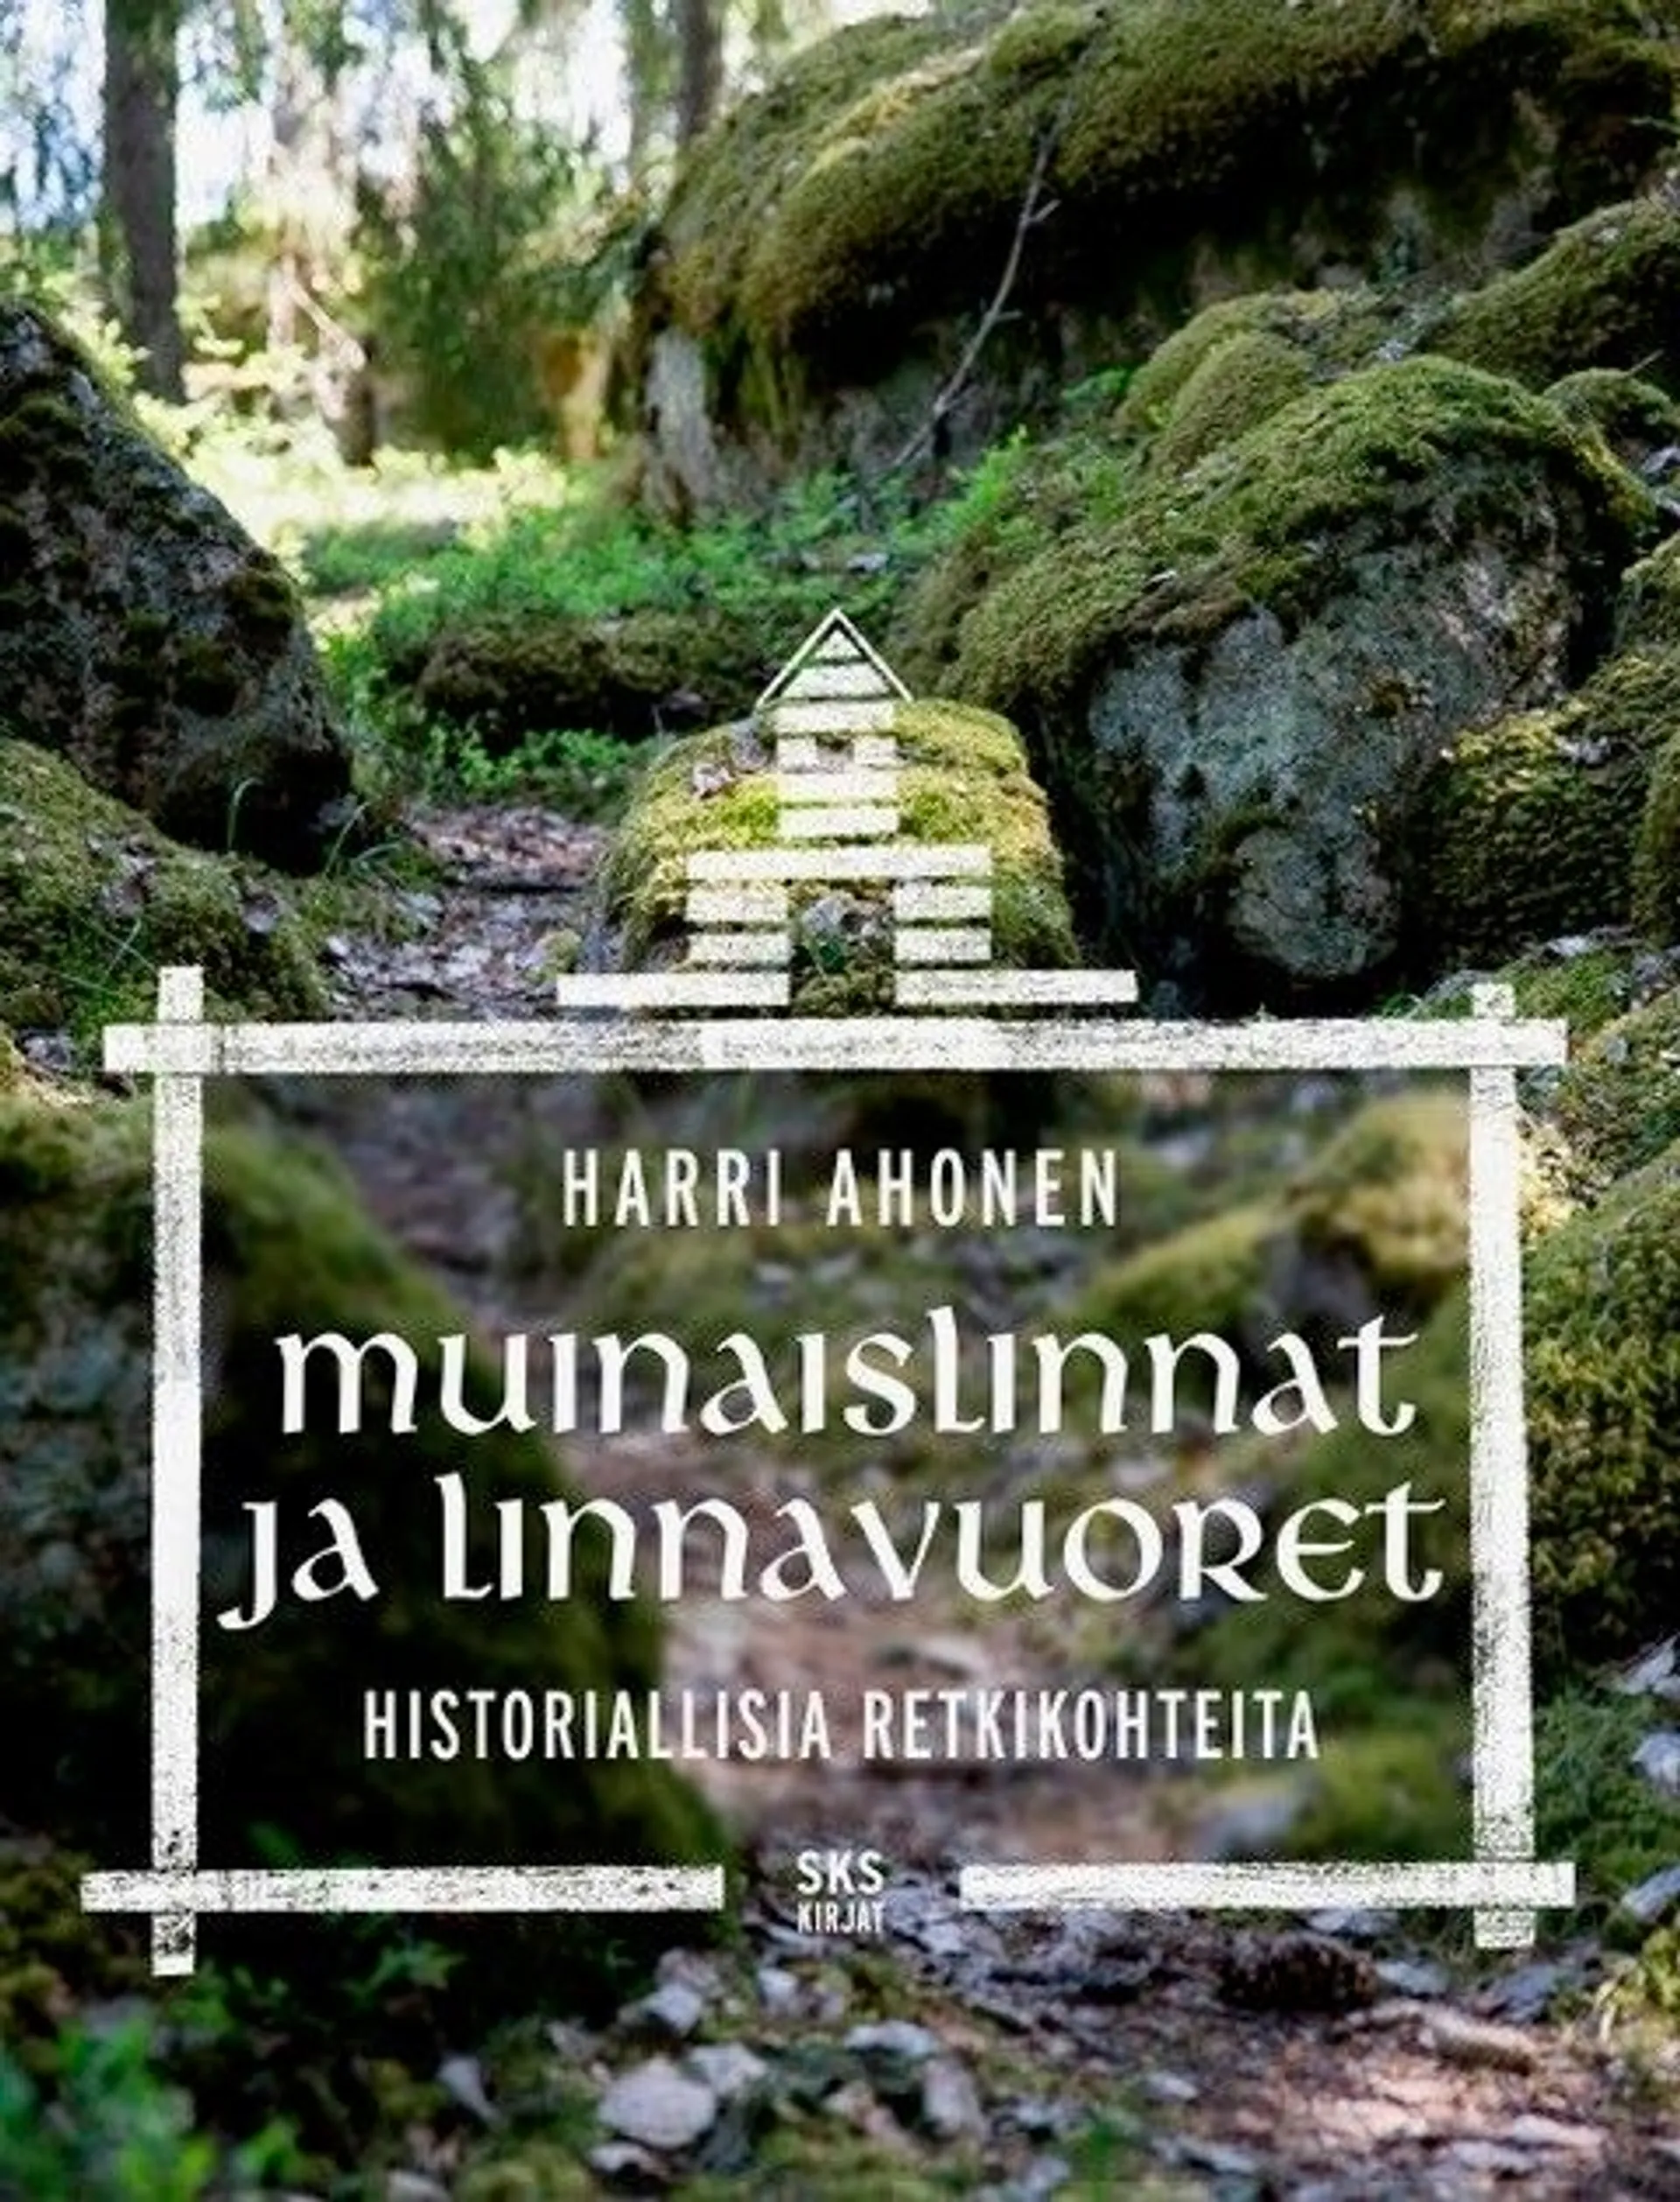 Ahonen, Muinaislinnat ja linnavuoret - Historiallisia retkikohteita